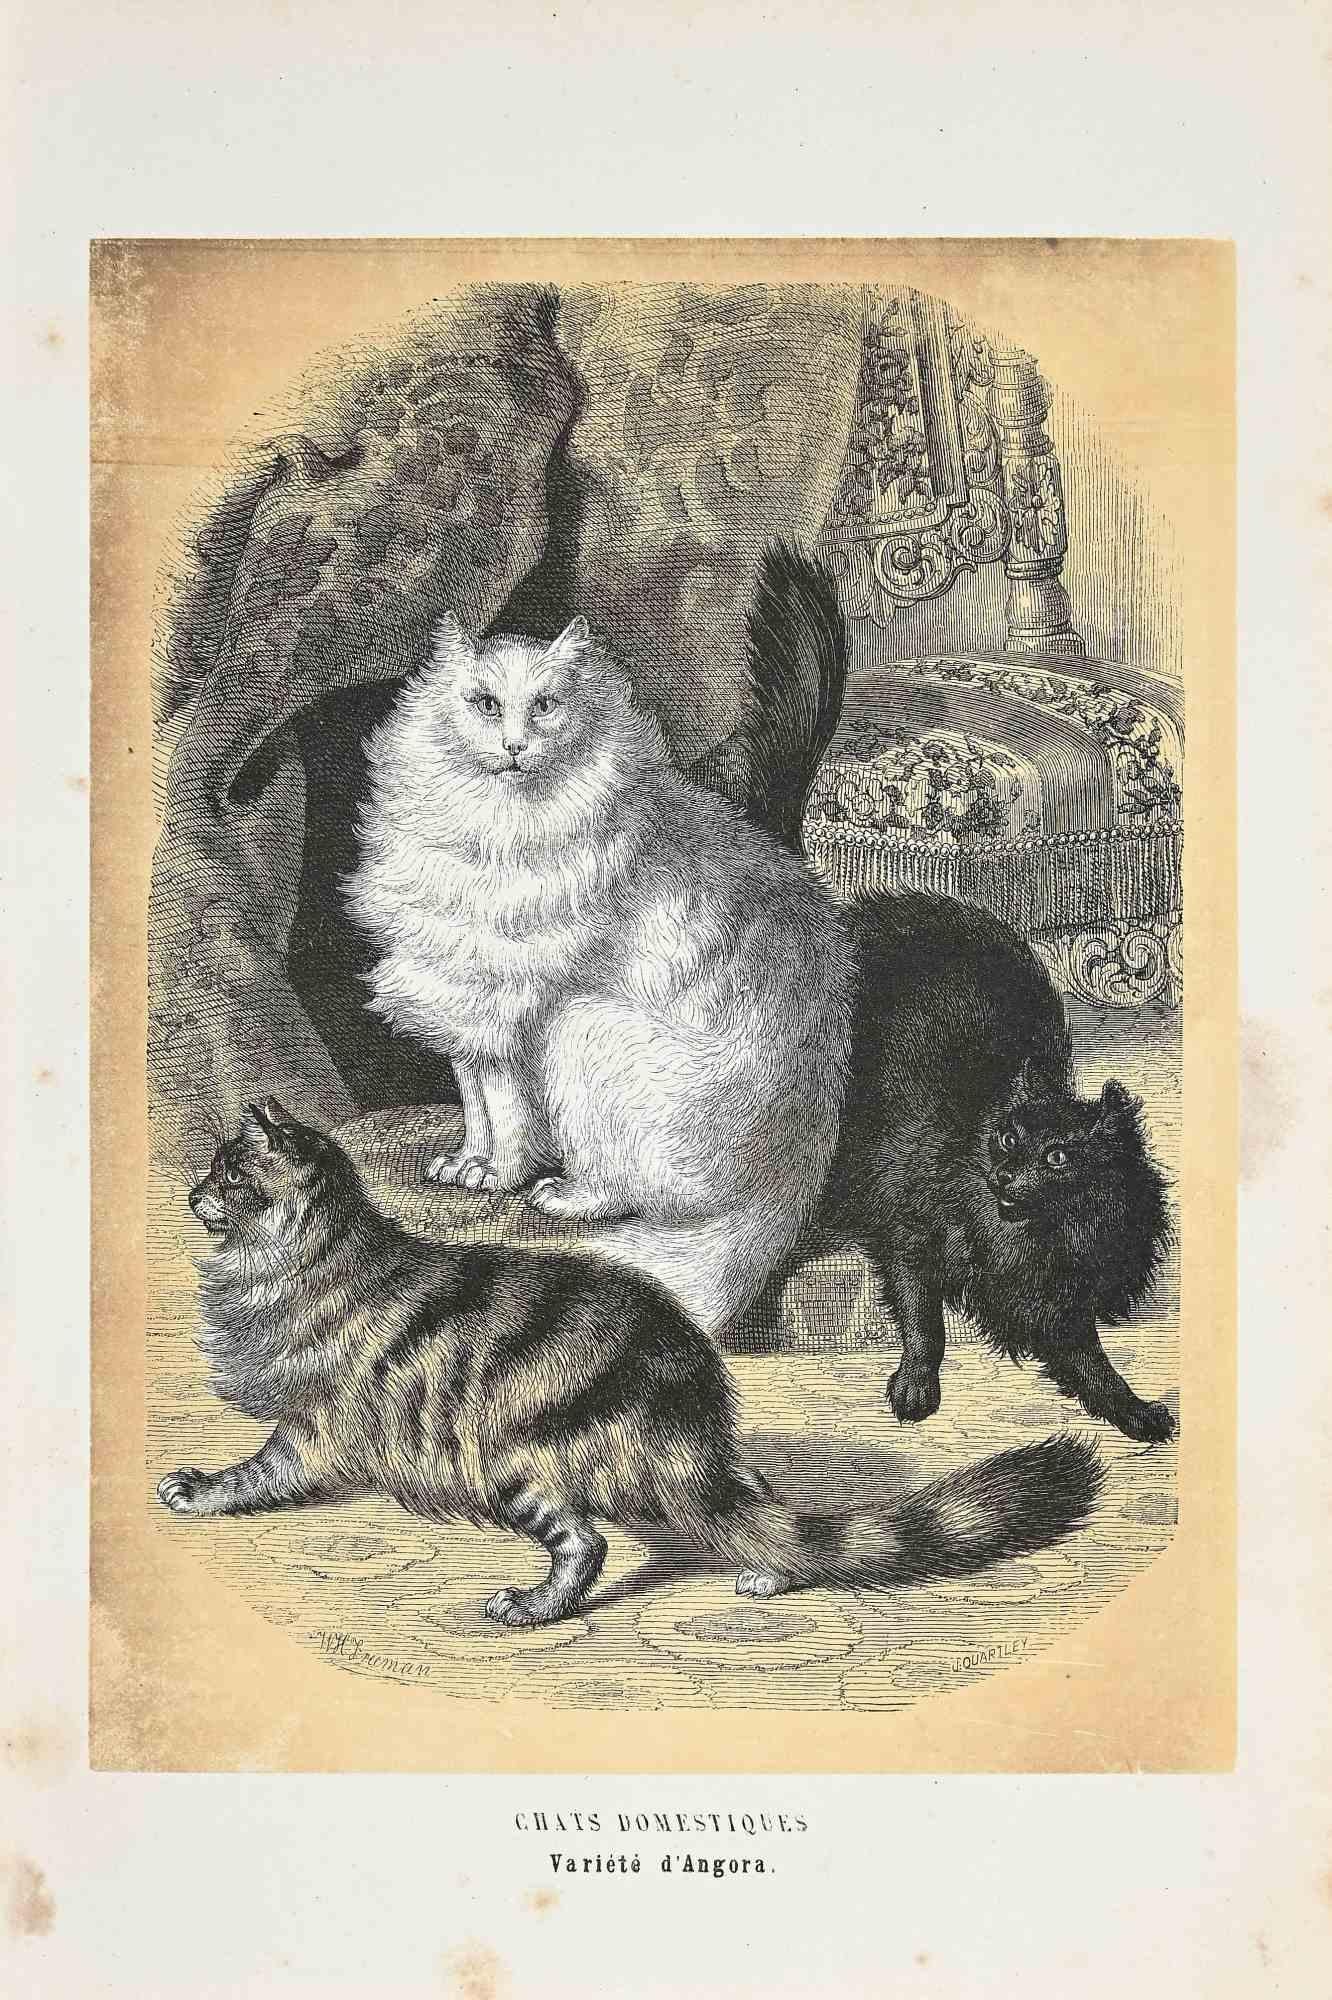 Domestic Cats ist eine Originallithografie auf elfenbeinfarbenem Papier, die von Paul Gervais (1816-1879) geschaffen wurde. Das Kunstwerk stammt aus der Serie "Les Trois Règnes de la Nature" und wurde 1854 veröffentlicht.

Guter Zustand bis auf